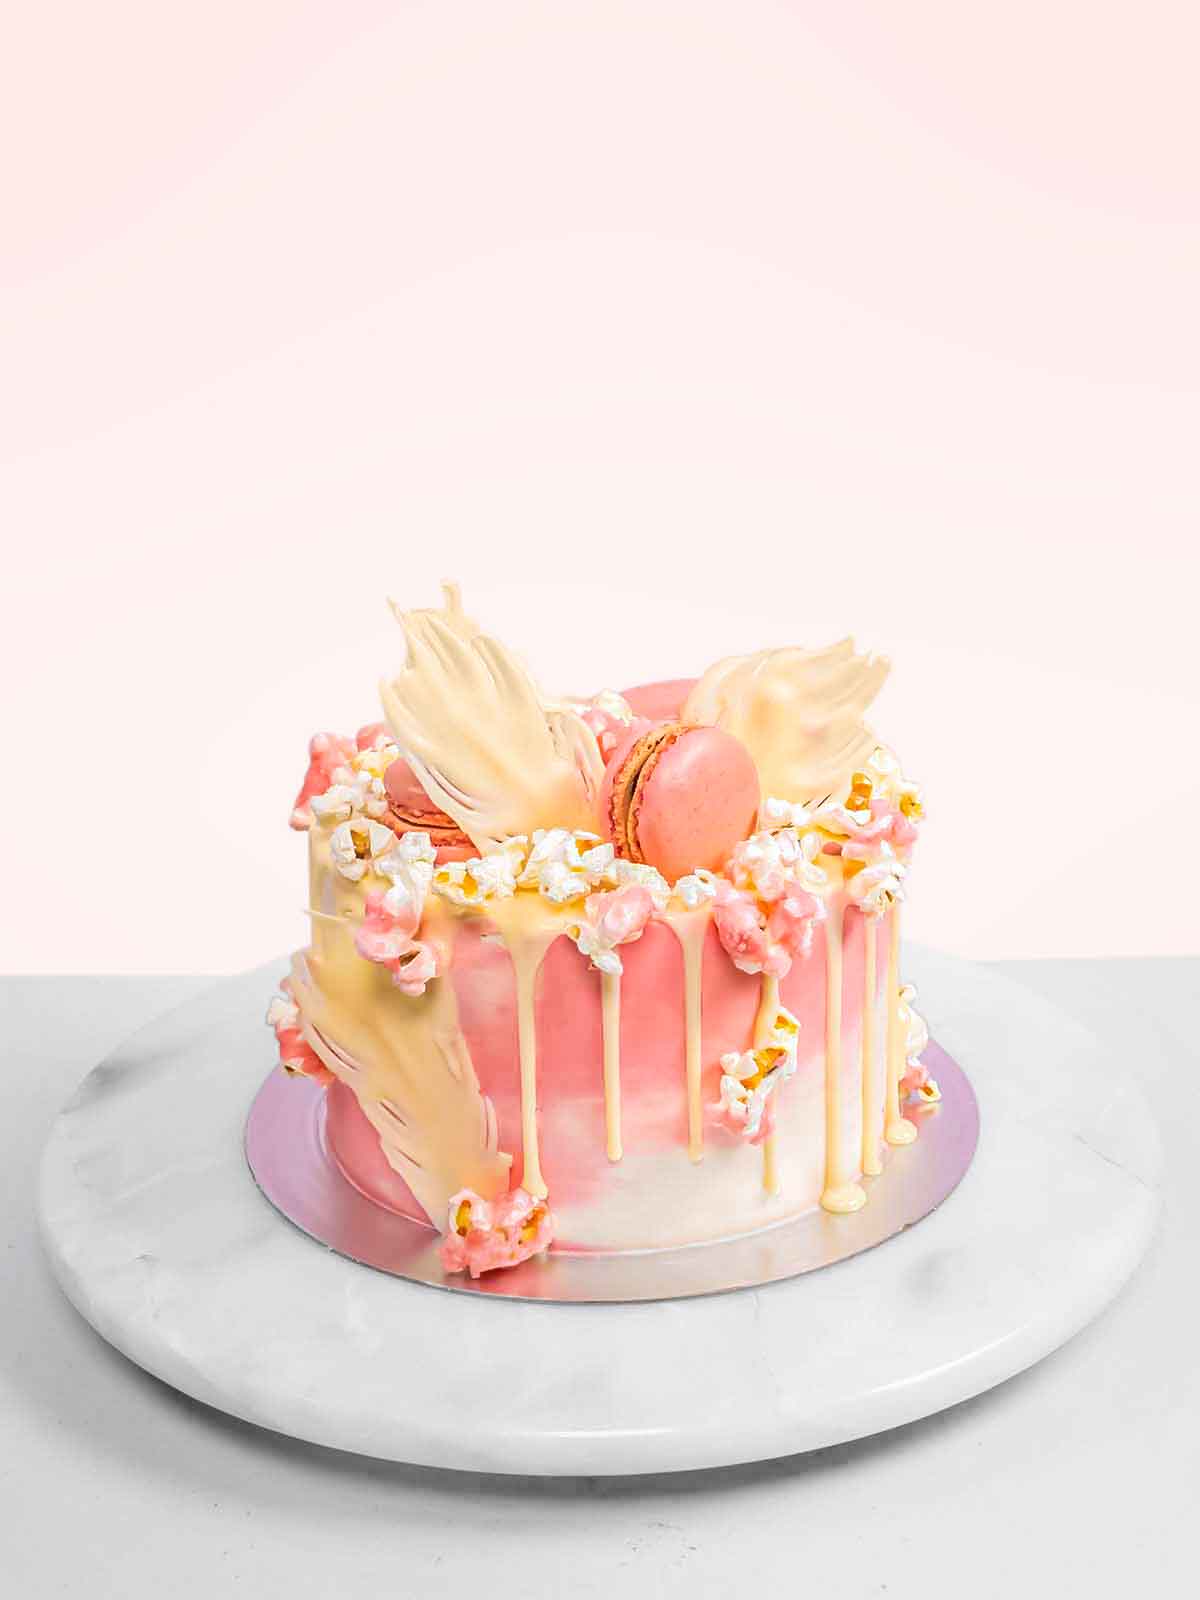 19 Writing styles ideas | cake writing, writing styles, cupcake cakes